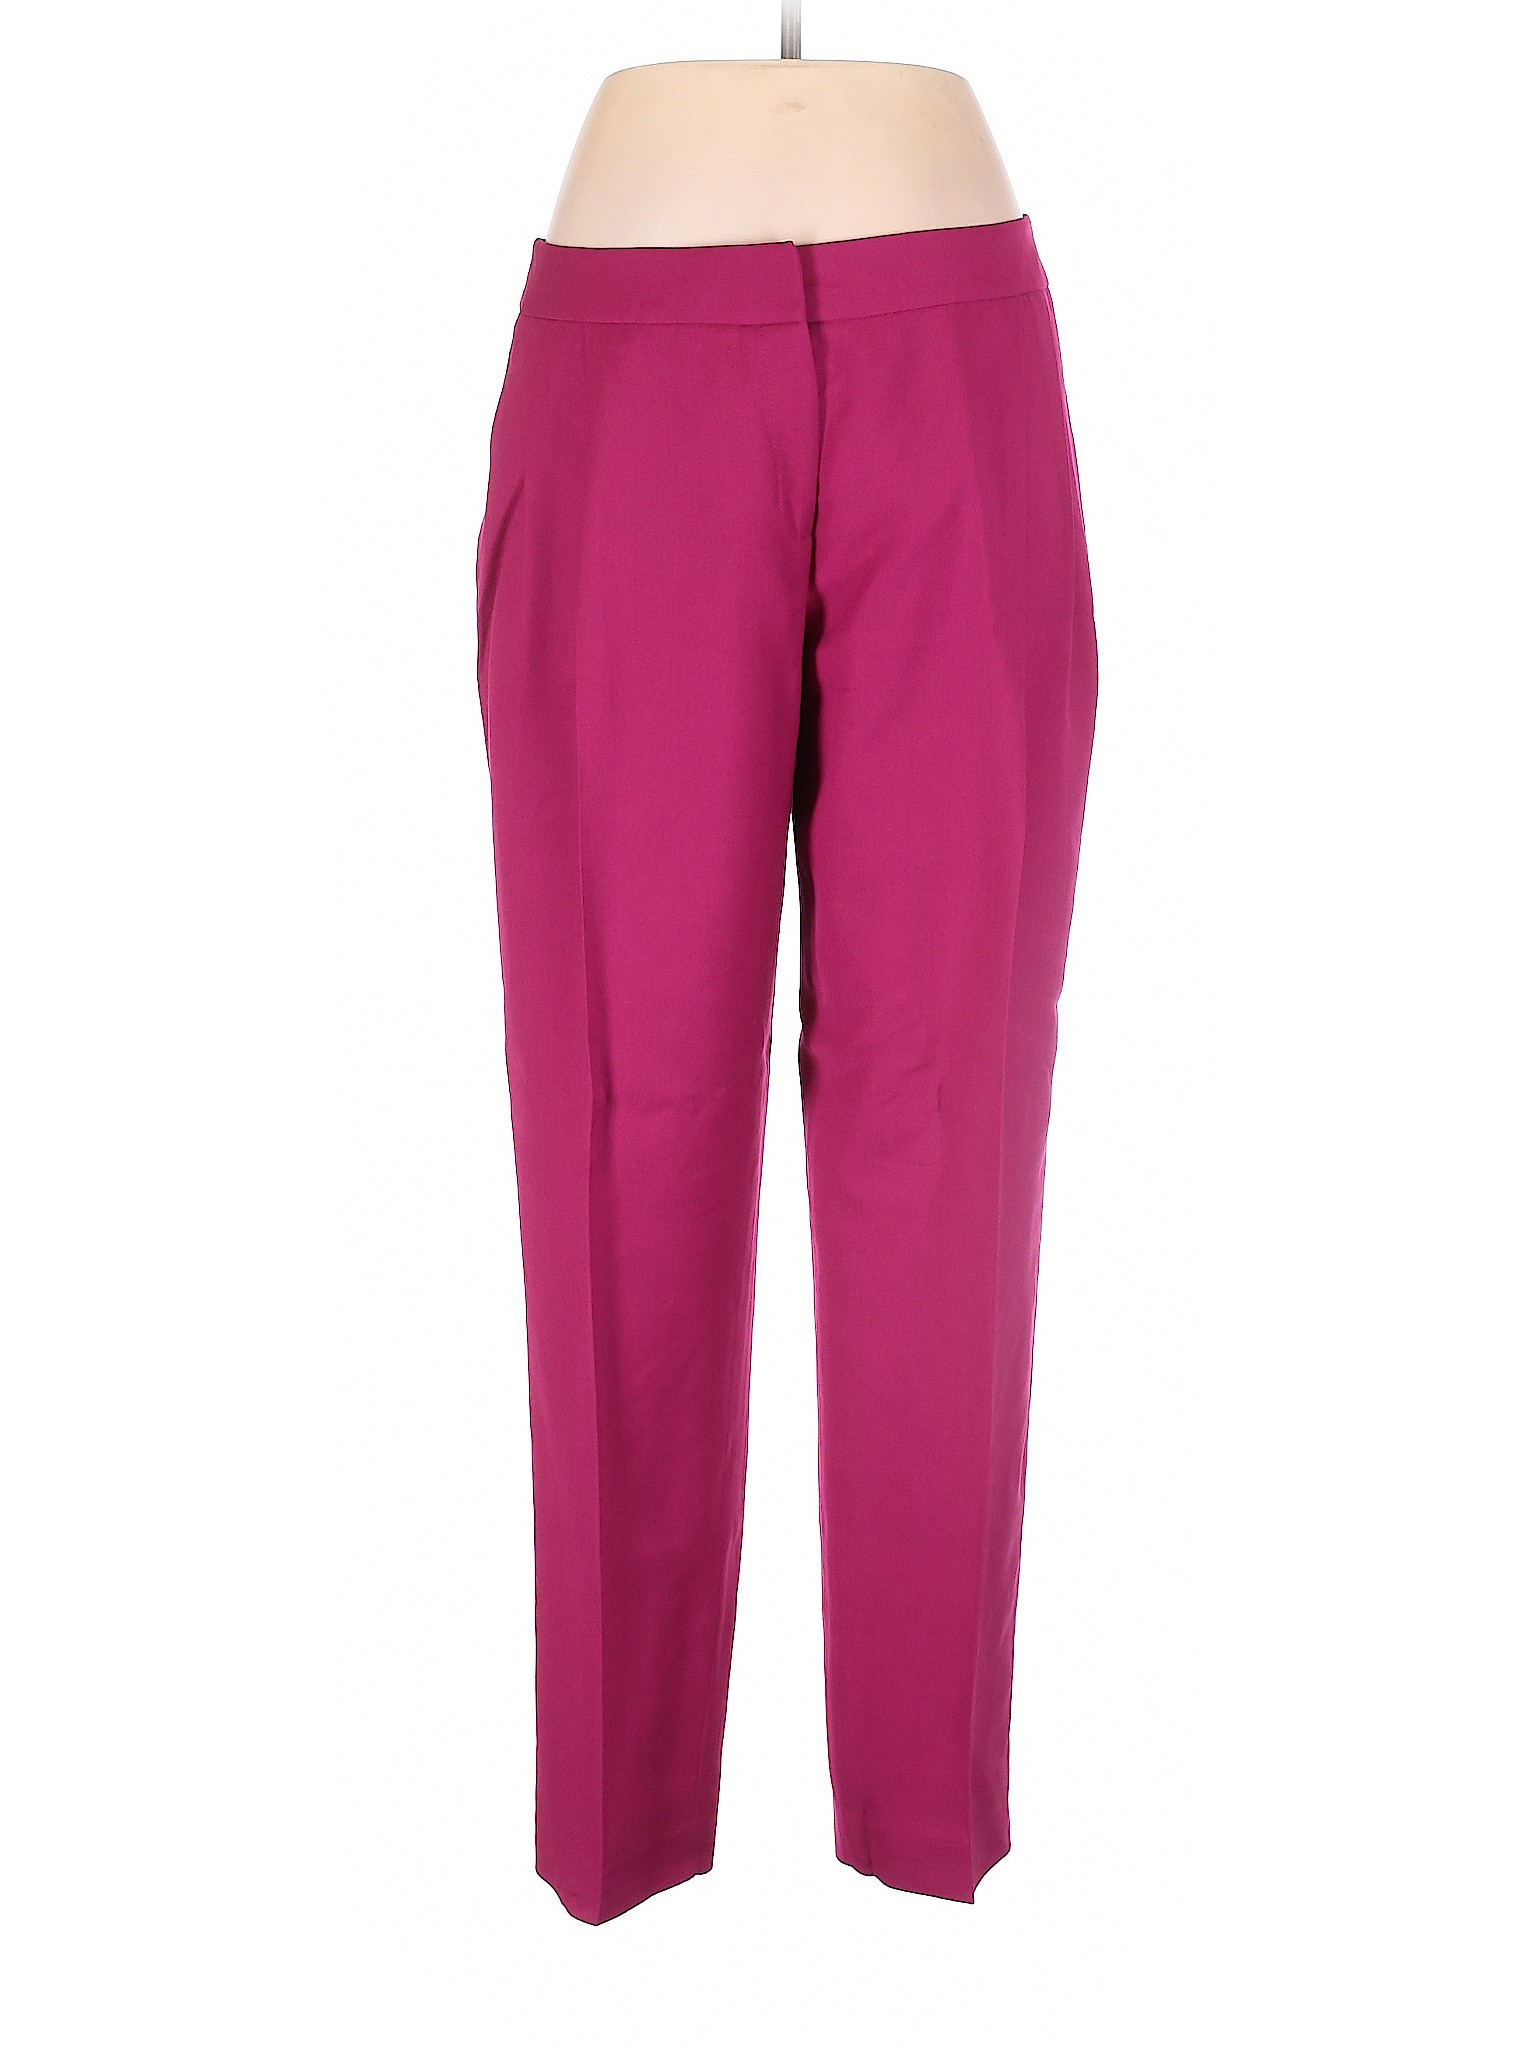 Karen Millen Women Pink Dress Pants 10 | eBay